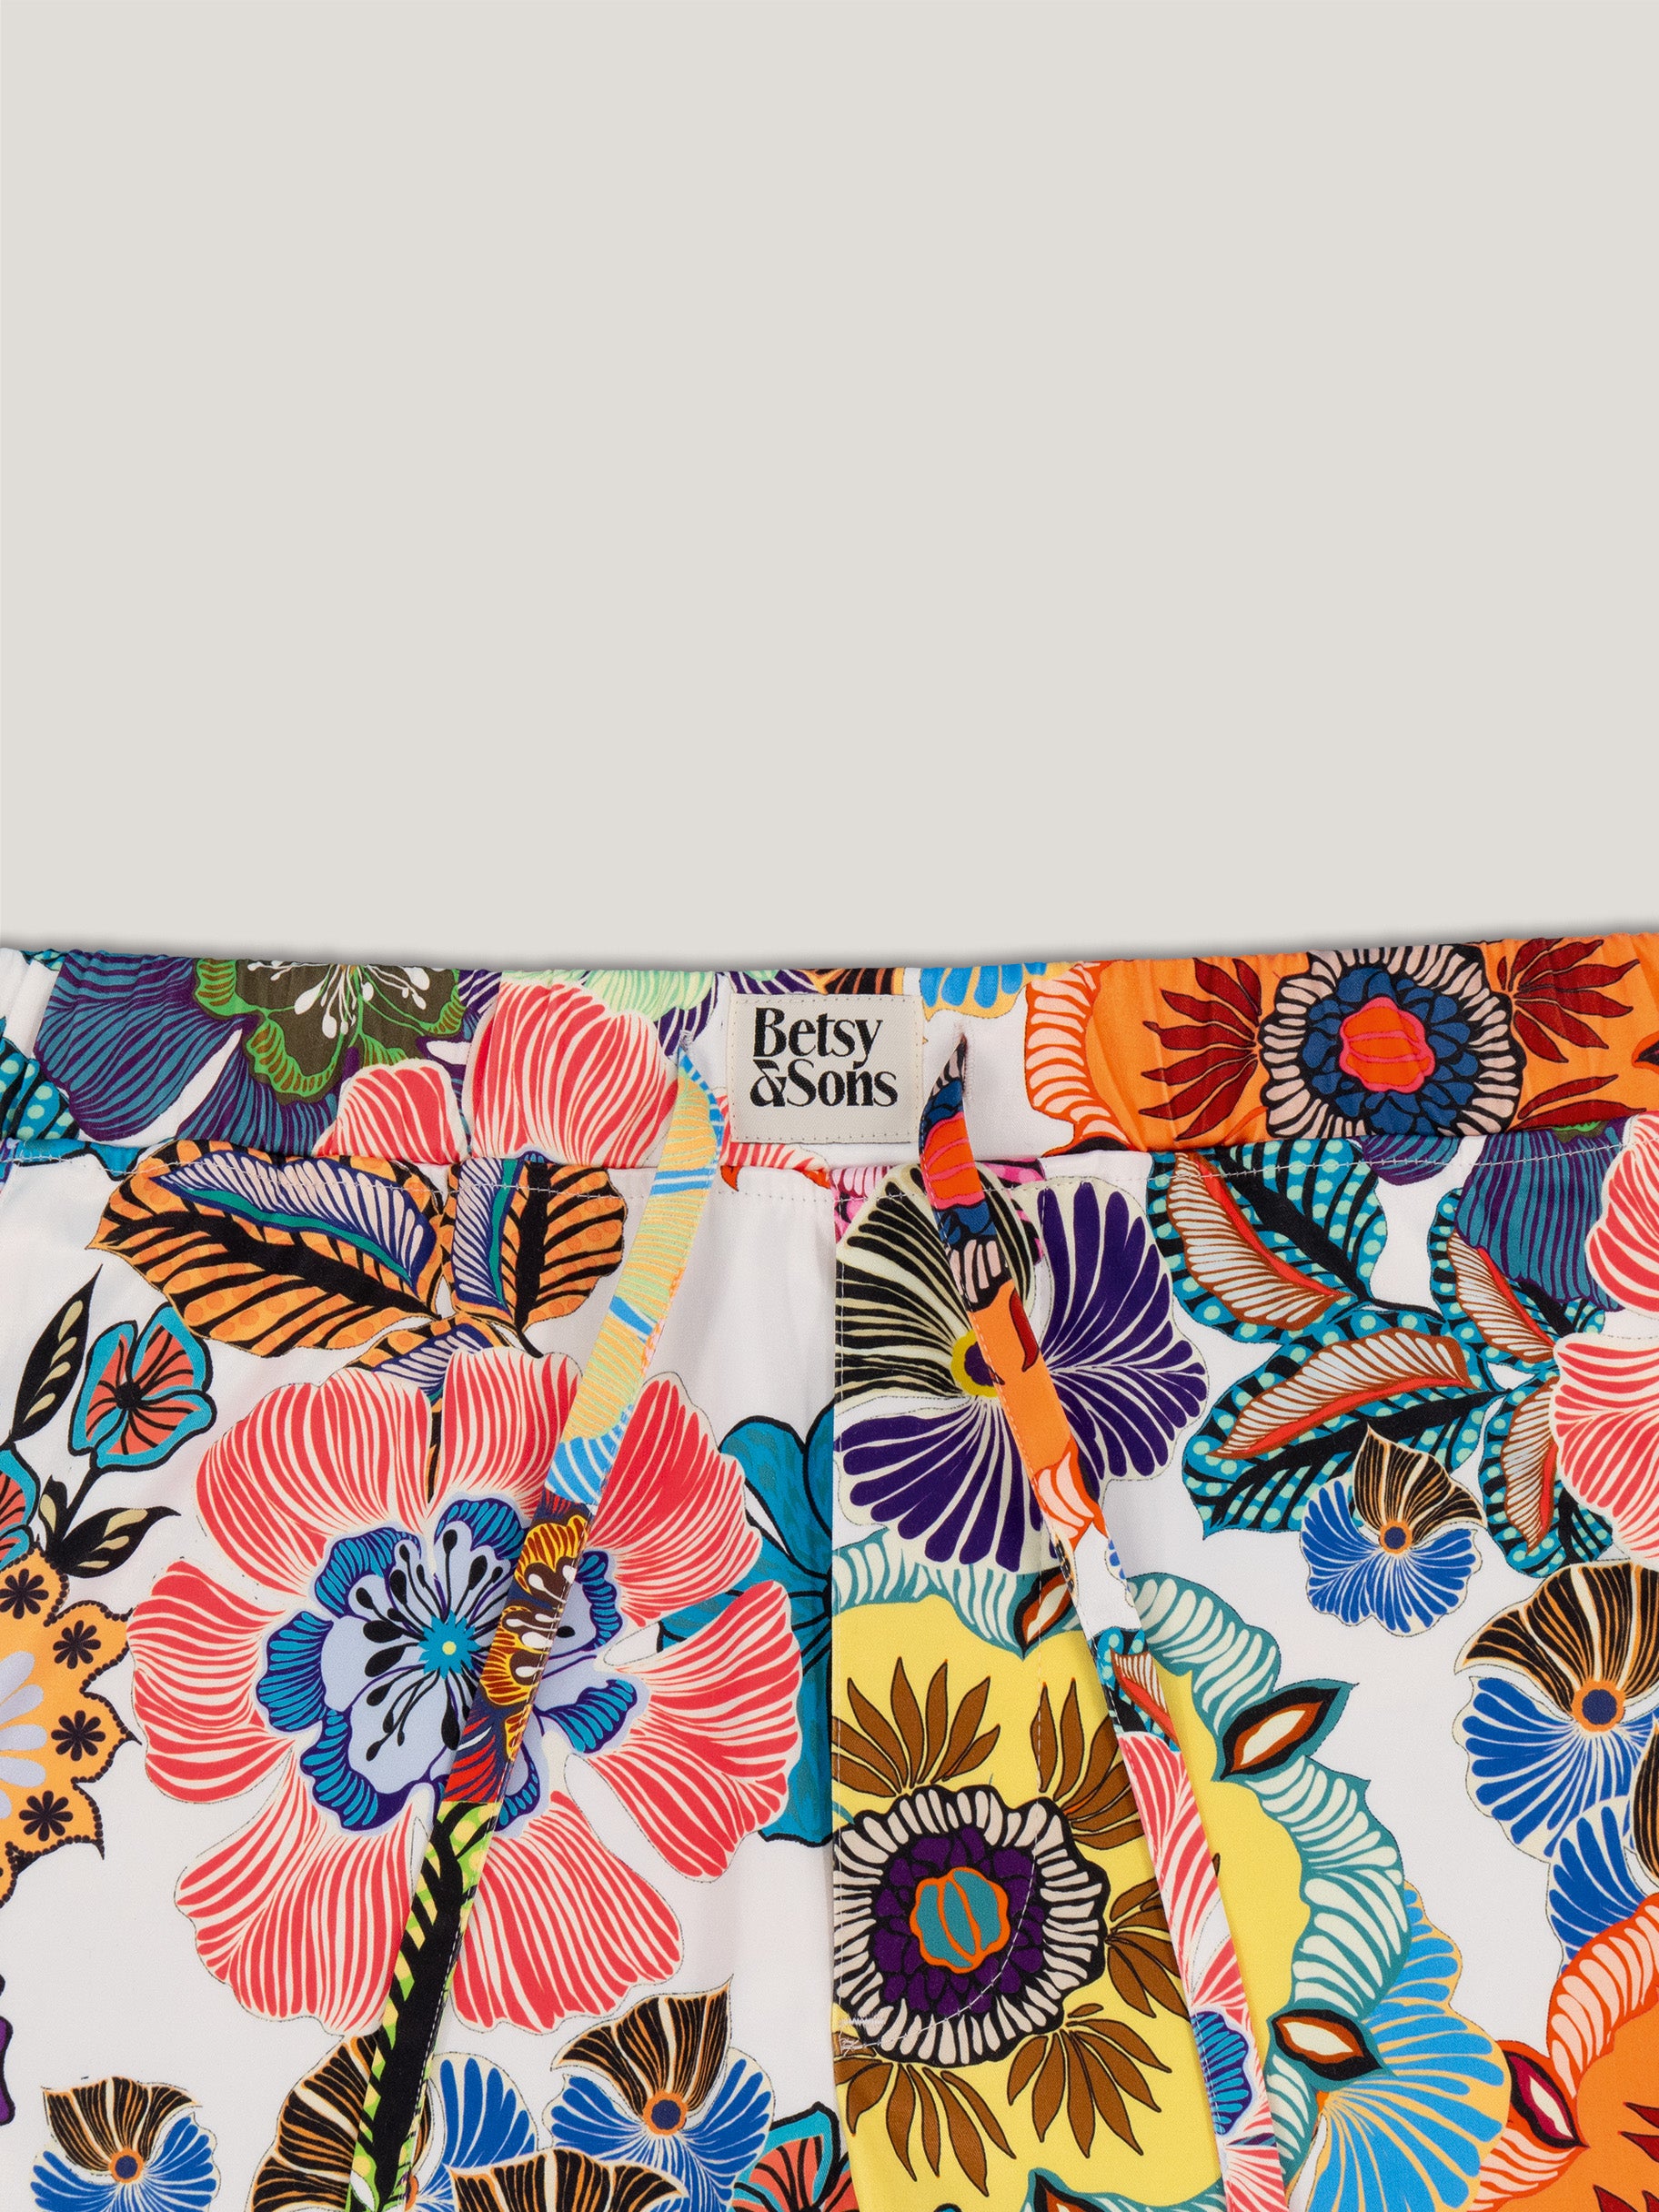 Detailansicht vom Hosenbund einer Satinhose mit Blumenmuster